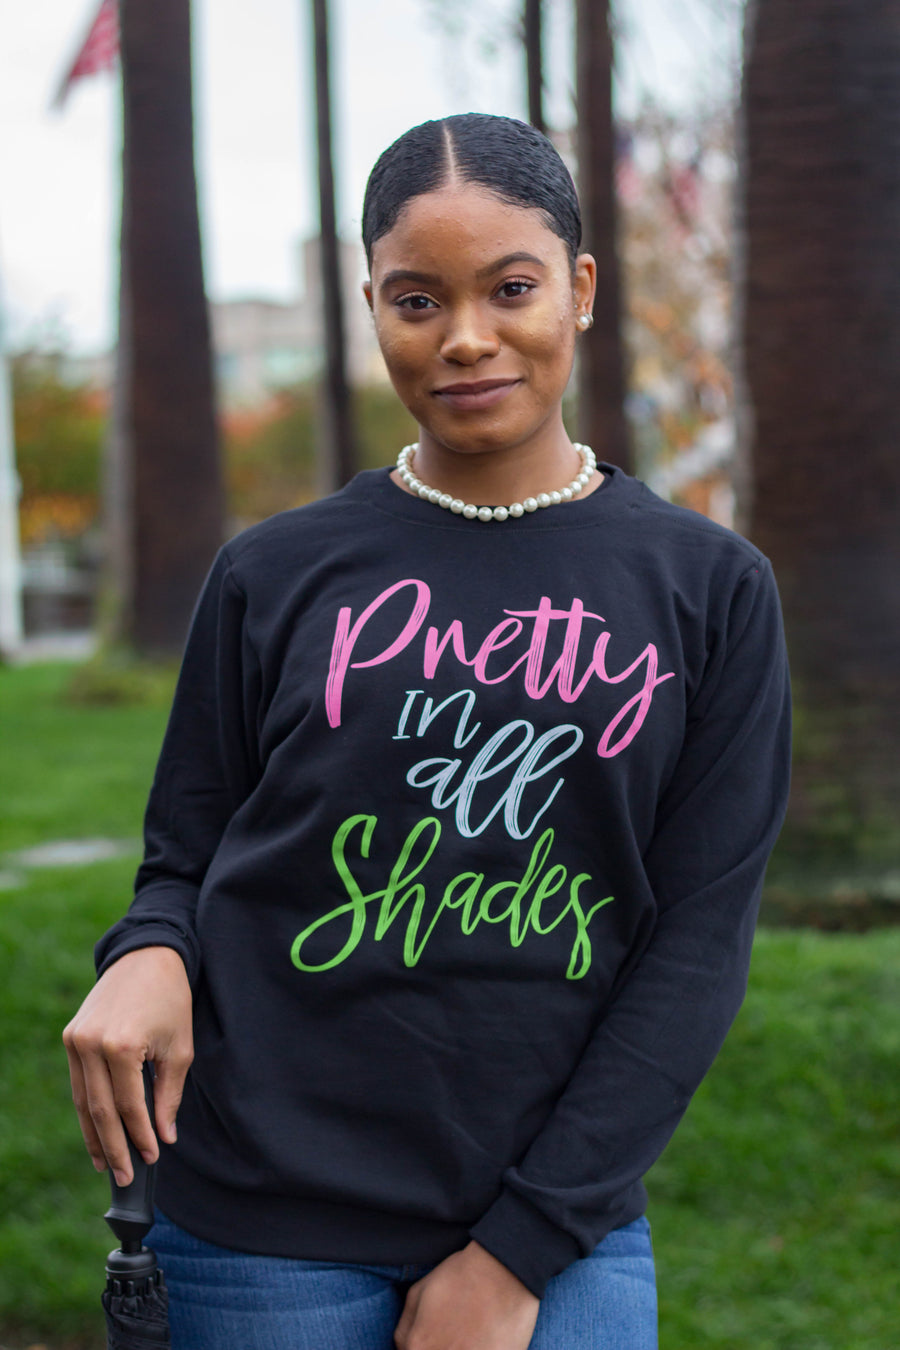 Pretty In All Shades sweatshirt